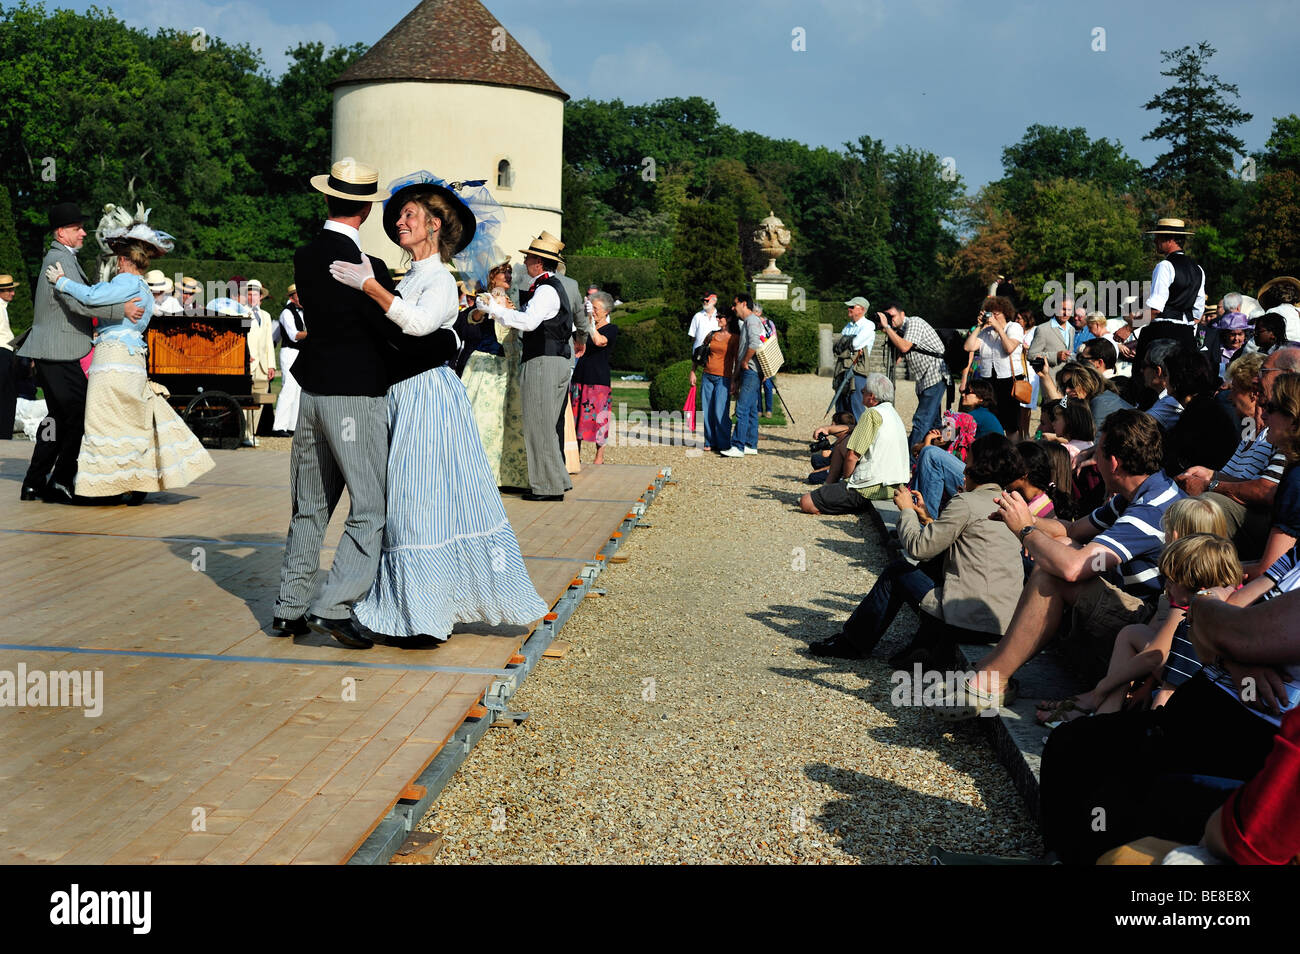 Paris, Francia - Turistas viendo Ball Event, 'Chateau de Breteuil', Parejas vestidas en época de vestuario, Fancy Dress, grupo de ancianos bailando, vintage Foto de stock